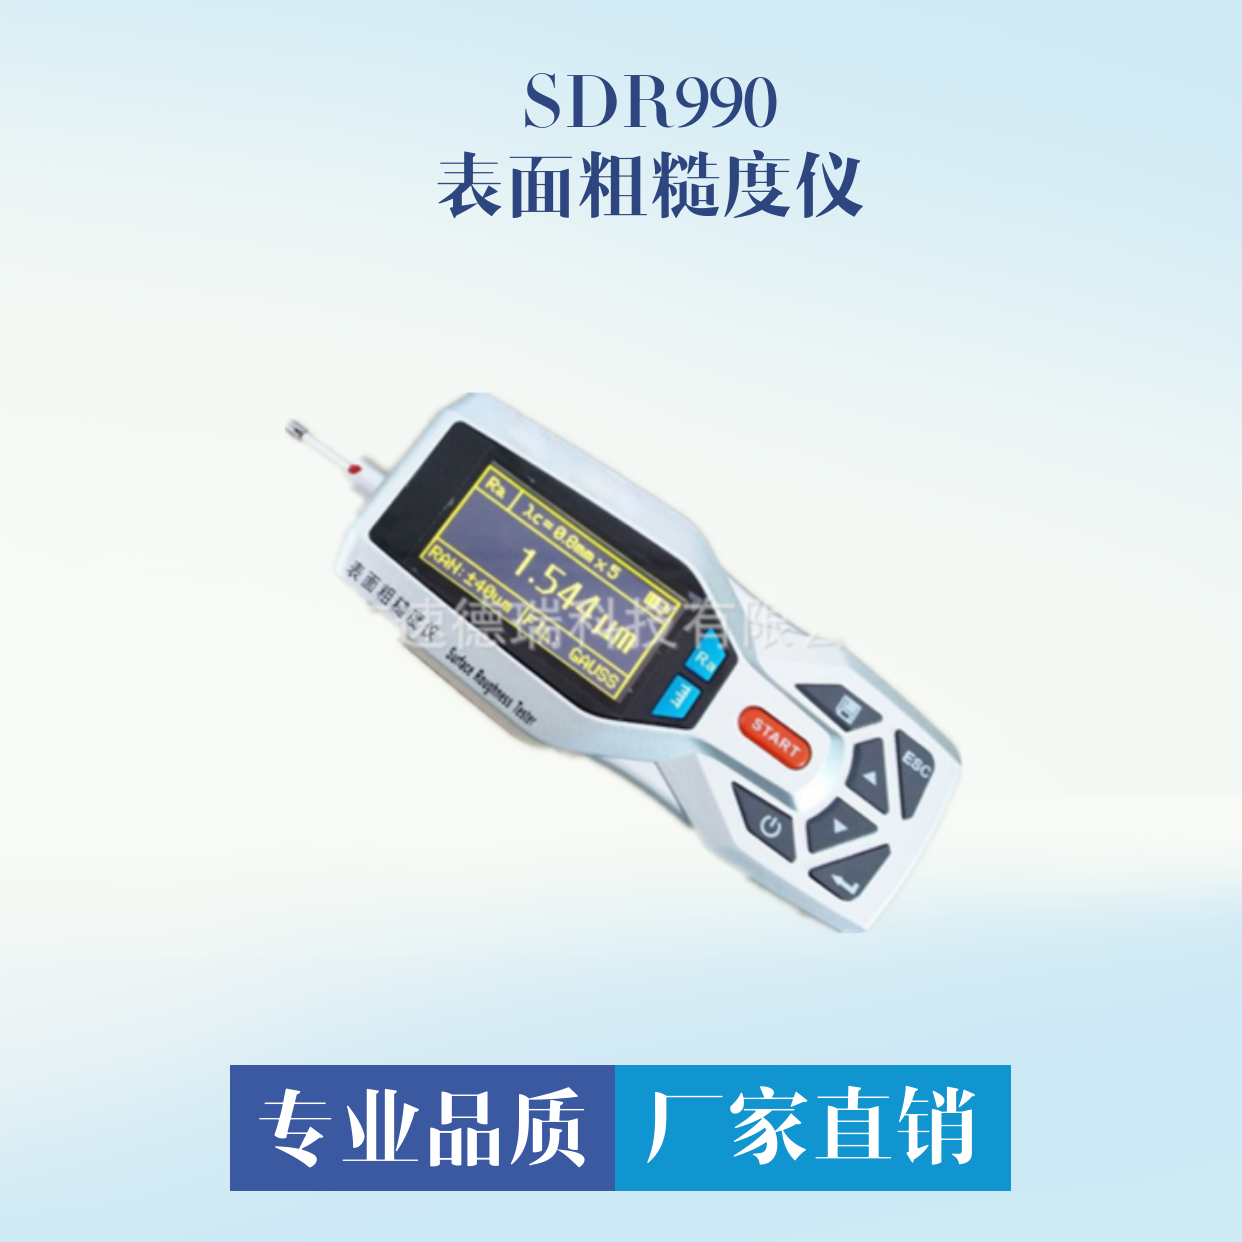 粗糙度检测仪SDR990